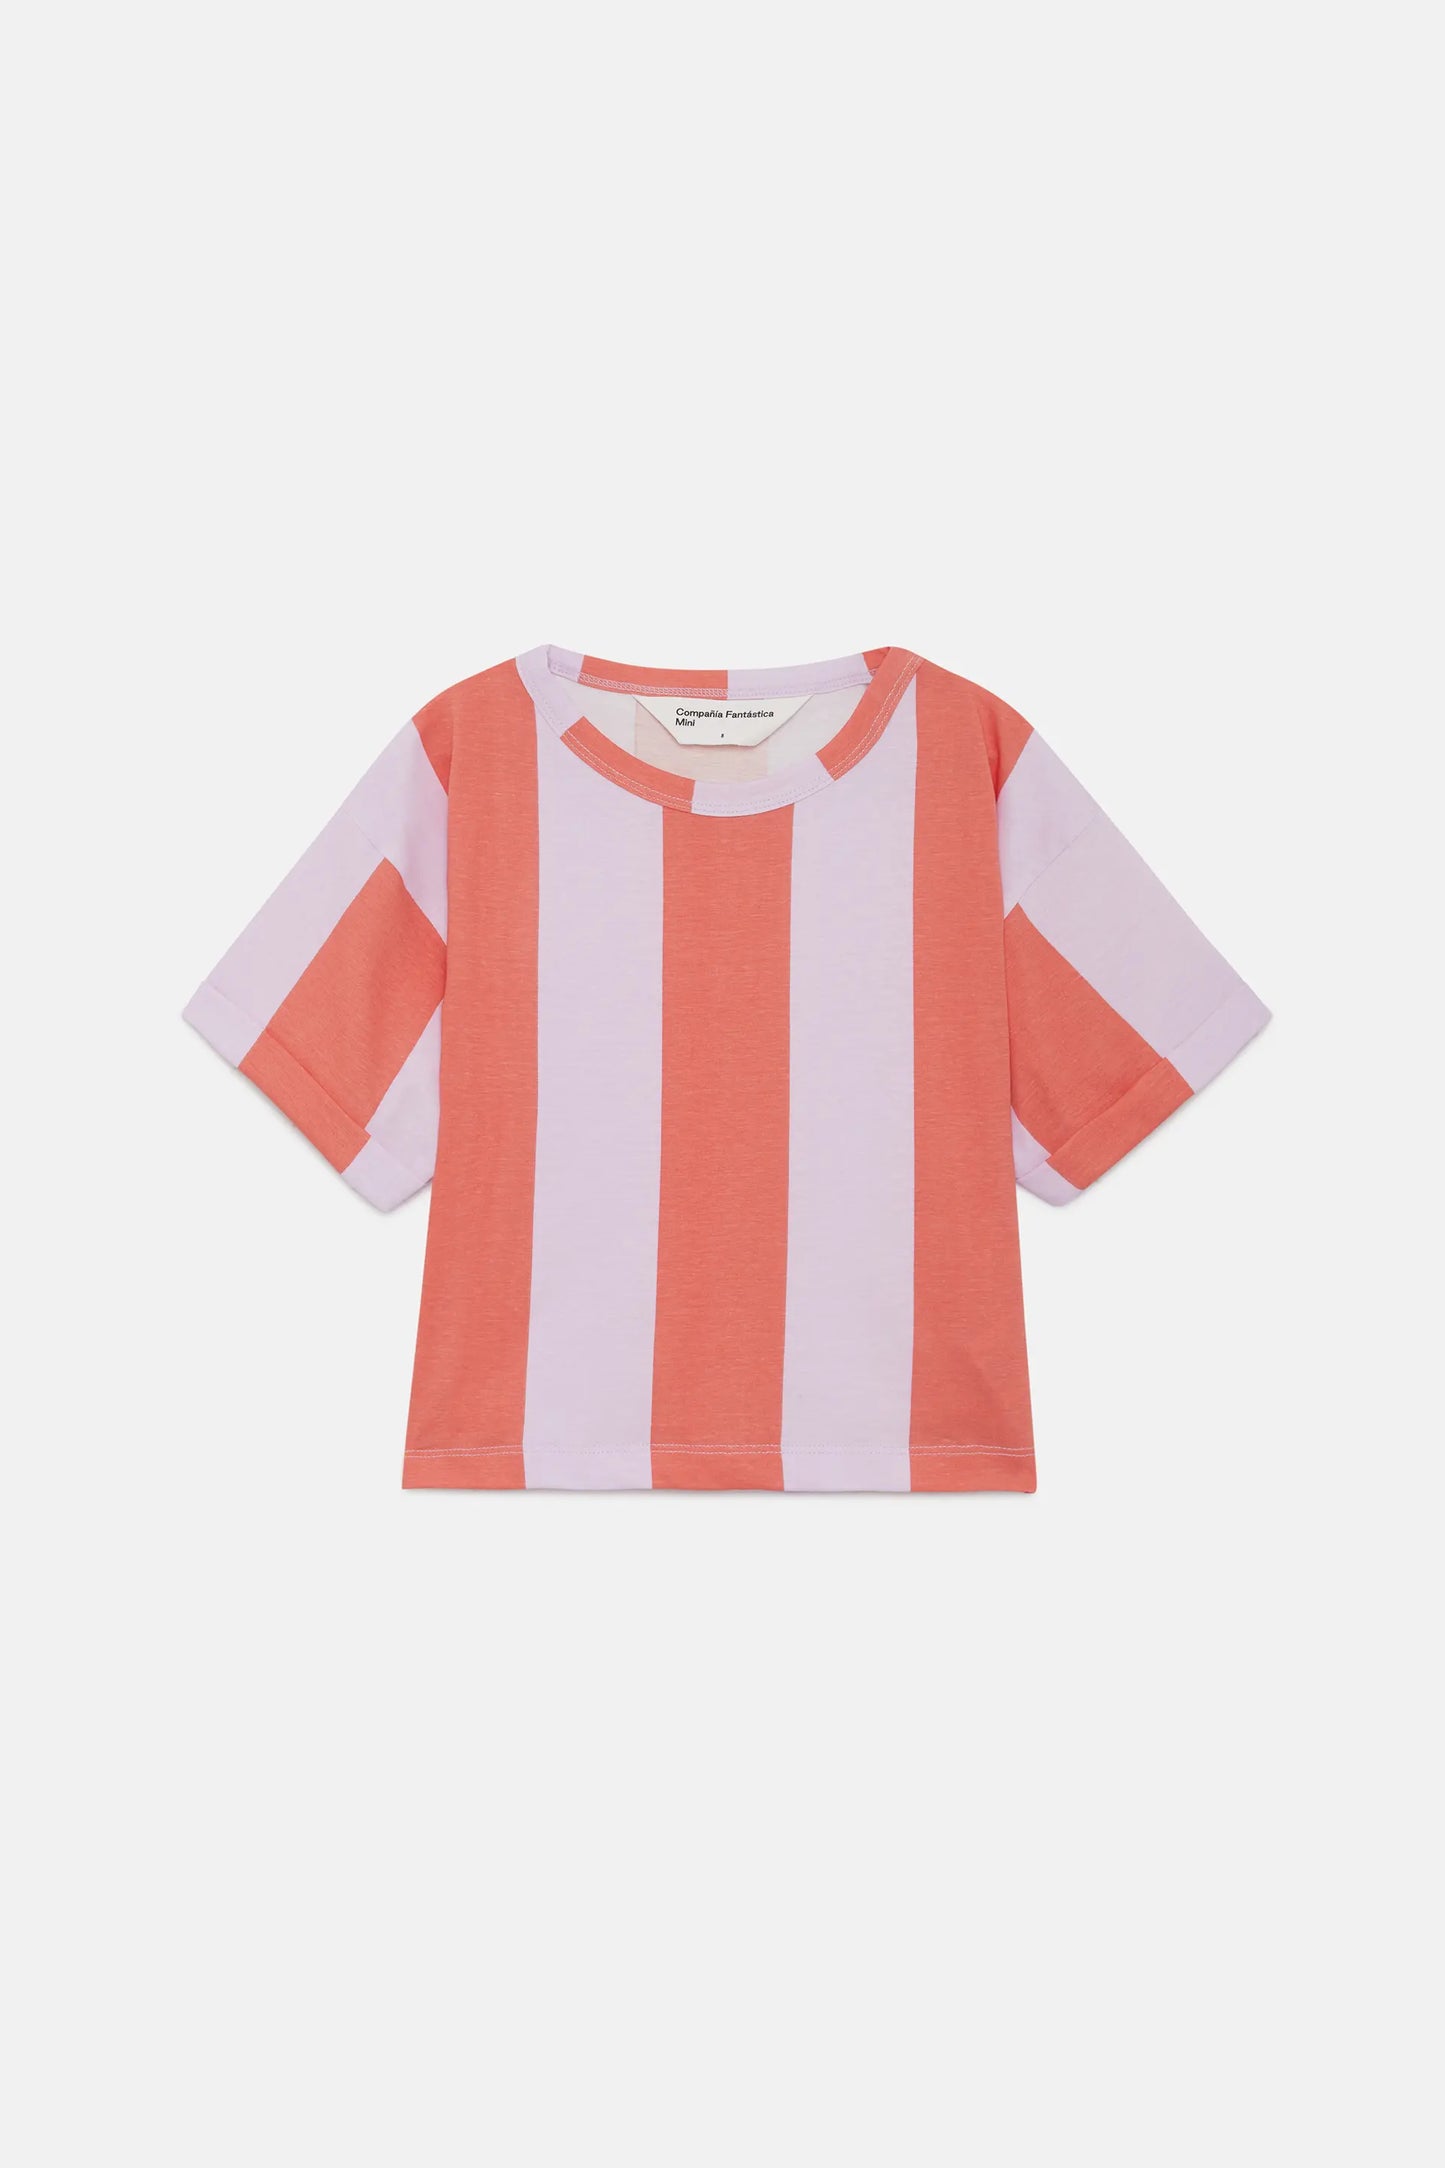 Camiseta unisex de rayas coral y lila